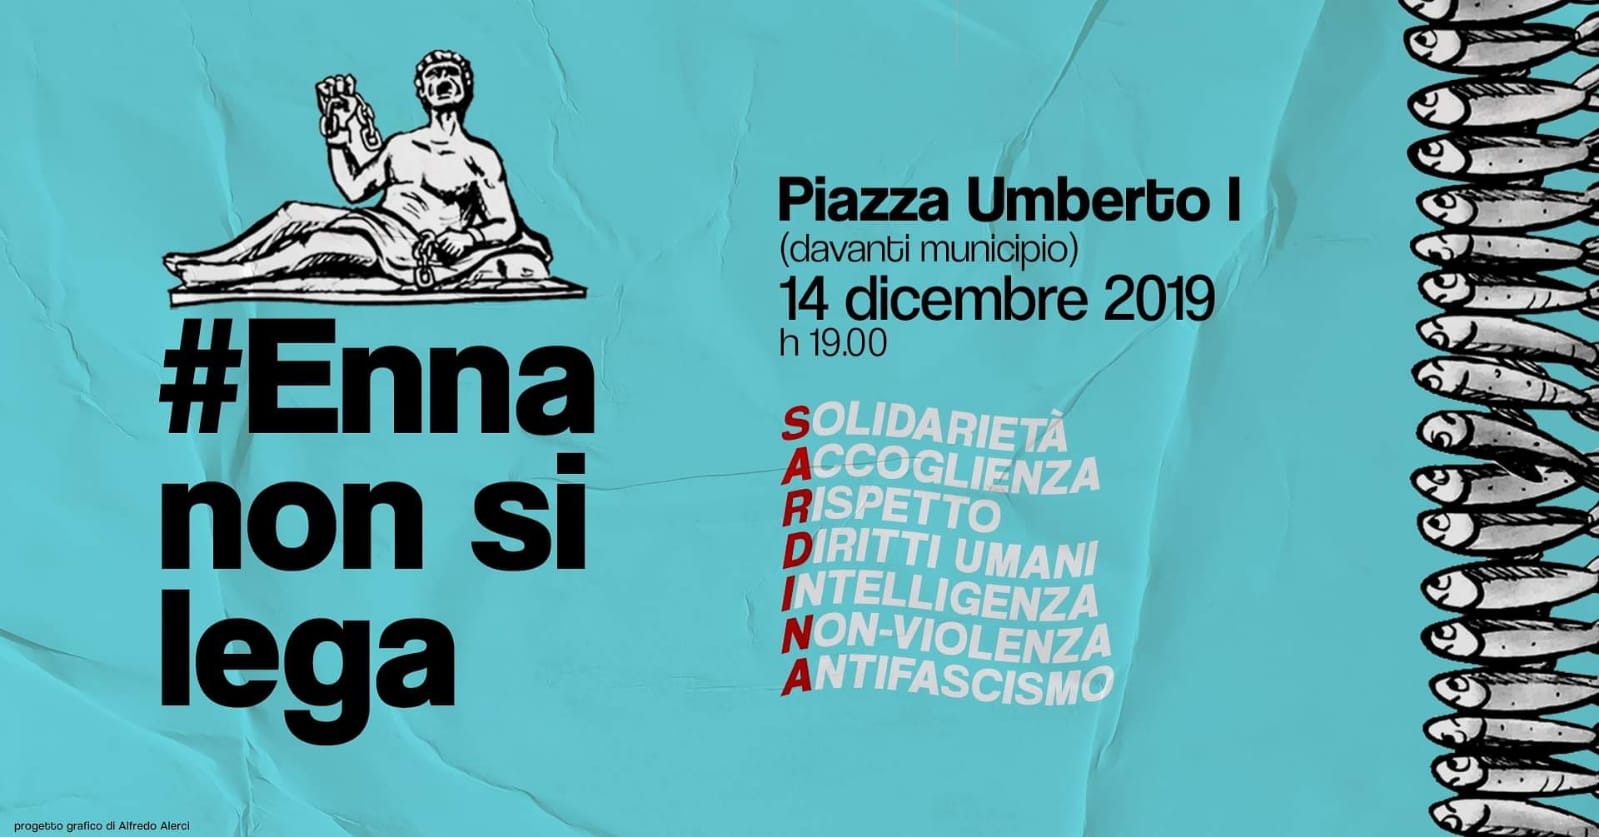 Domani manifestazione del movimento delle Sardine  in piazza Umberto I a Enna